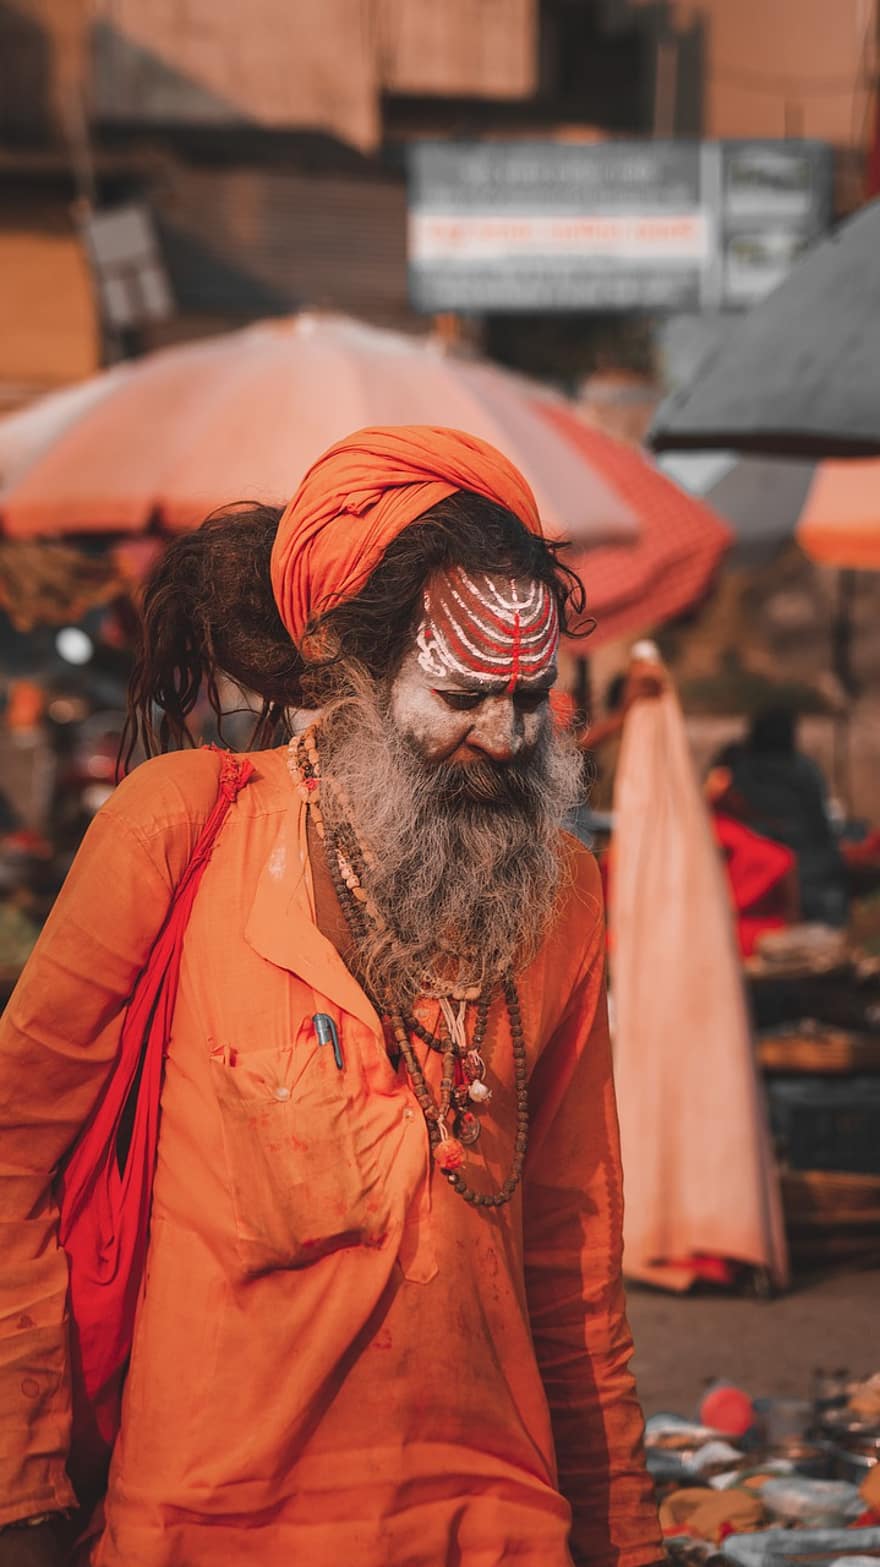 aghori, Shaiva Sadhus, homens, culturas, cultura indígena, uma pessoa, turbante, barba, cultura indiana, adulto, roupa tradicional